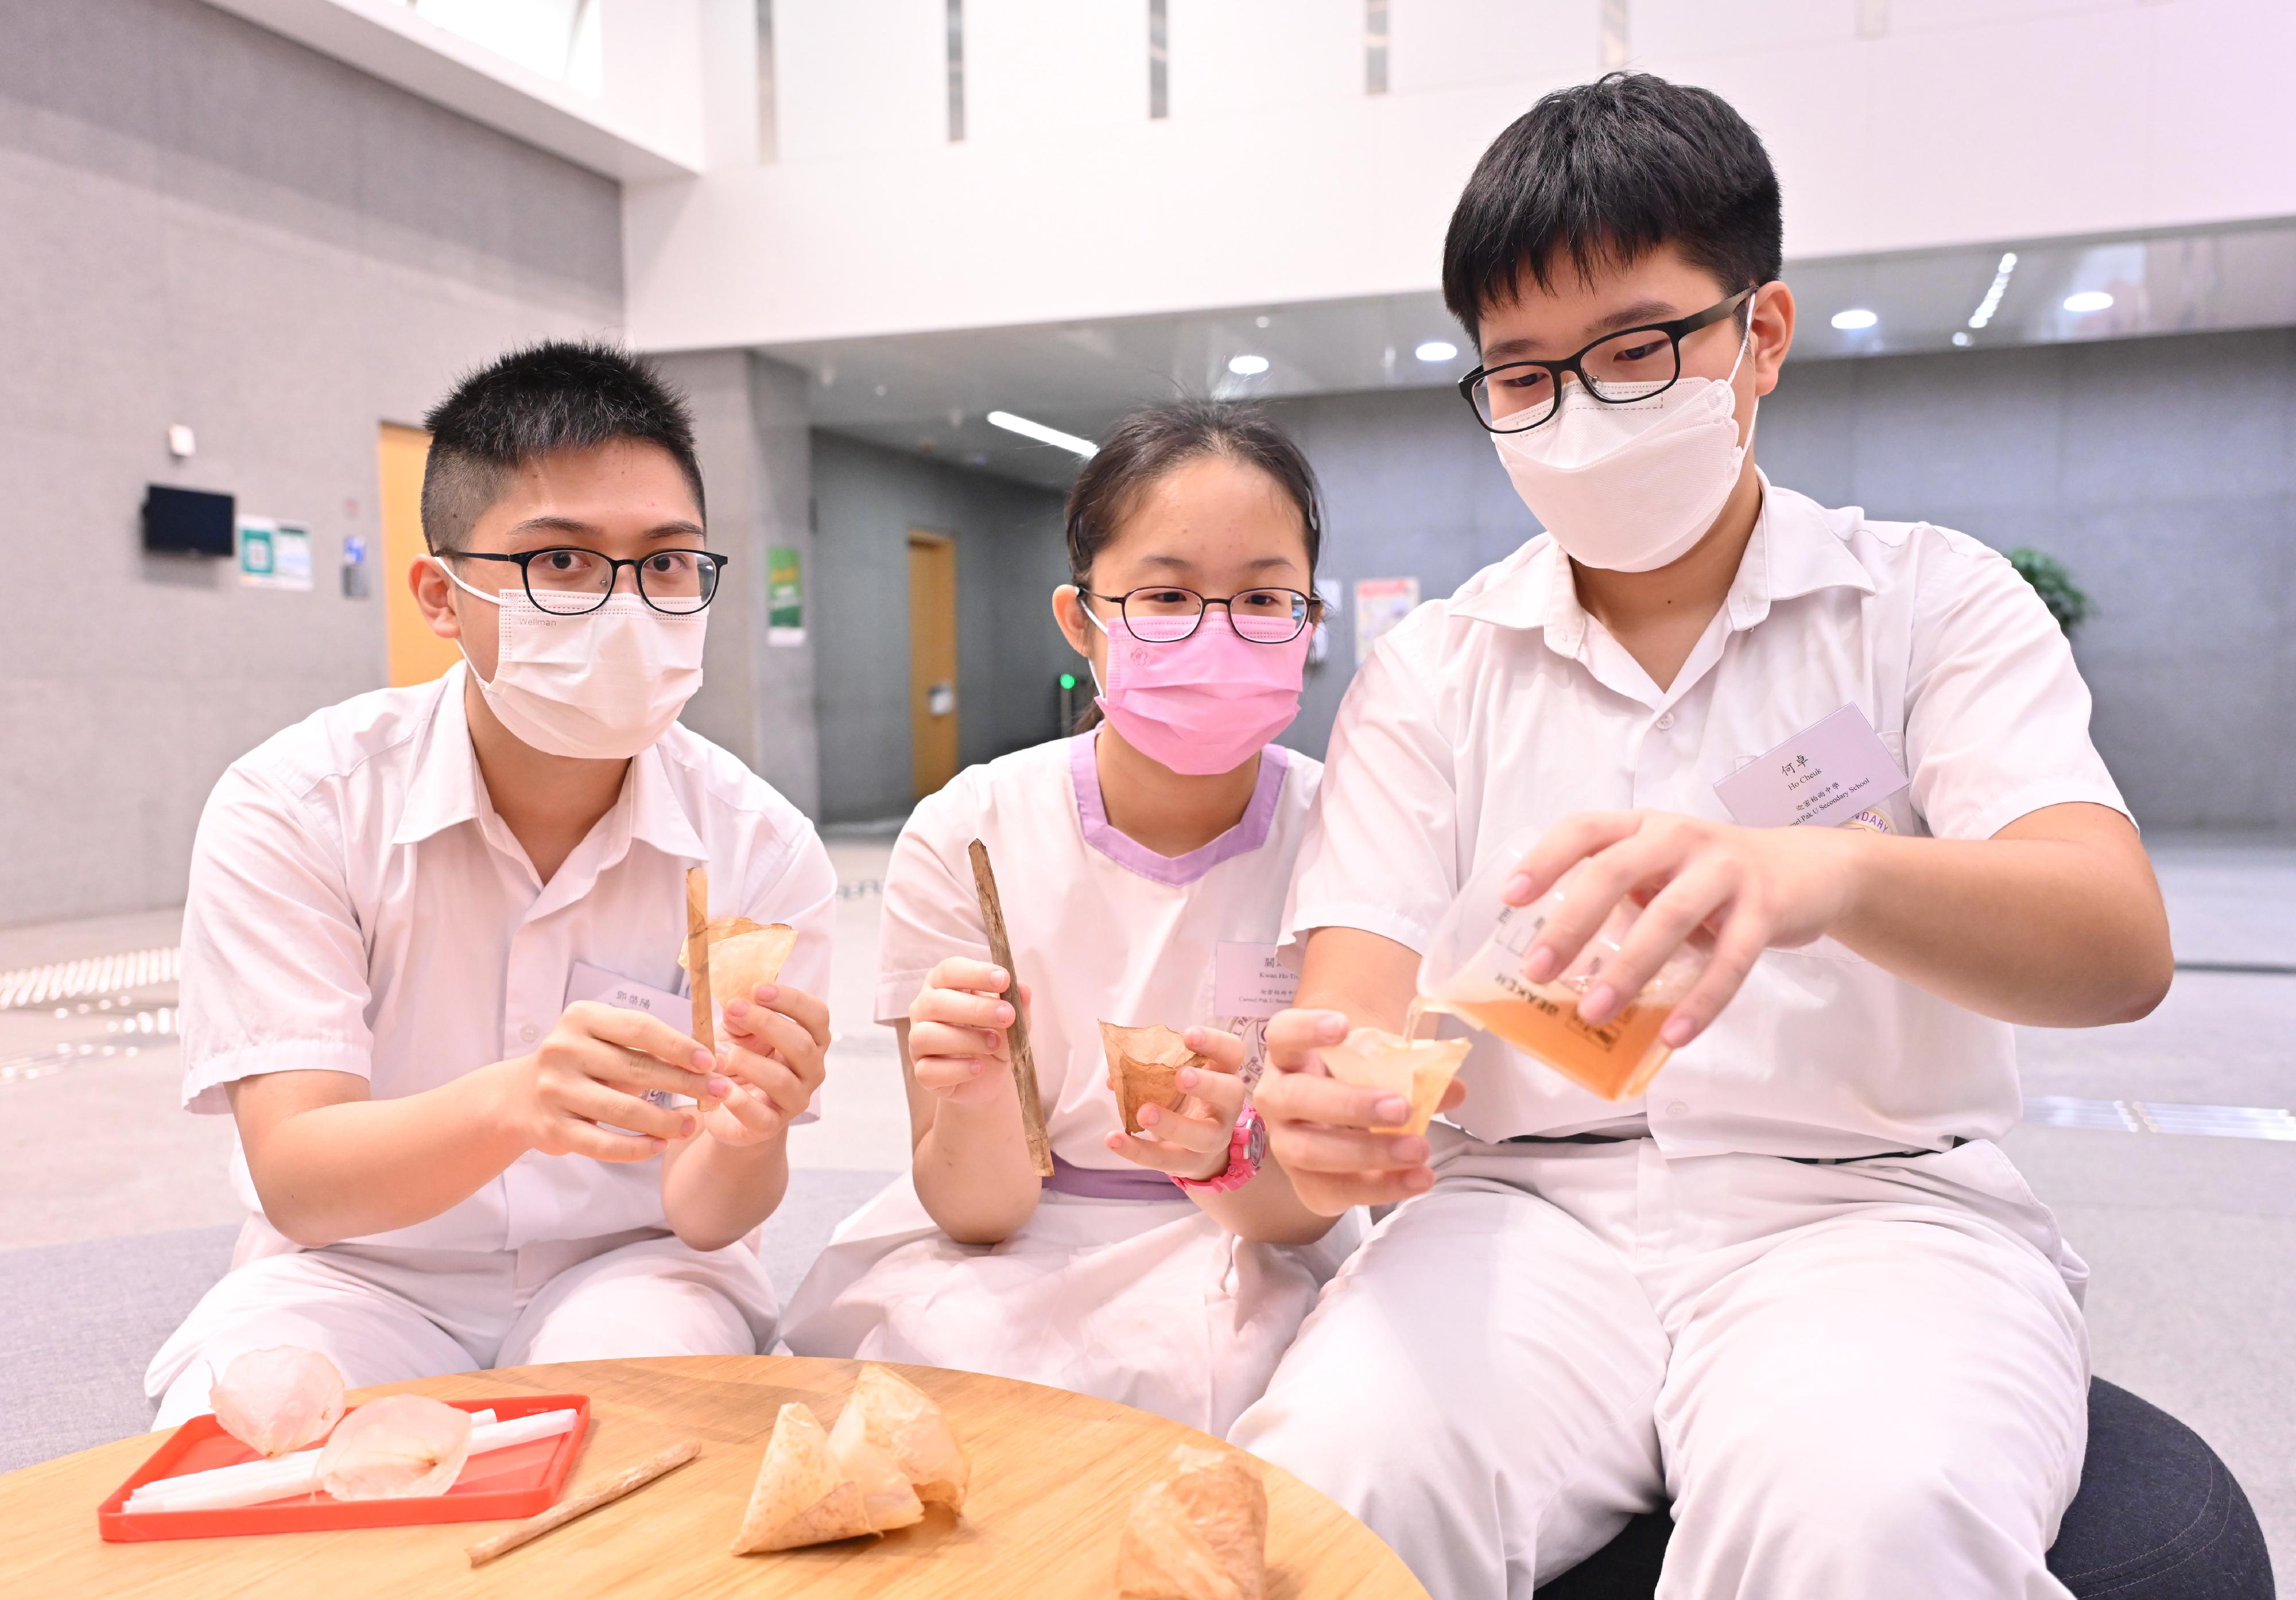 「创新科技嘉年华2022」将在十月二十二至三十日举行。图示迦密柏雨中学学生研发，由果皮制成的烤红茶菌吸管和杯子。